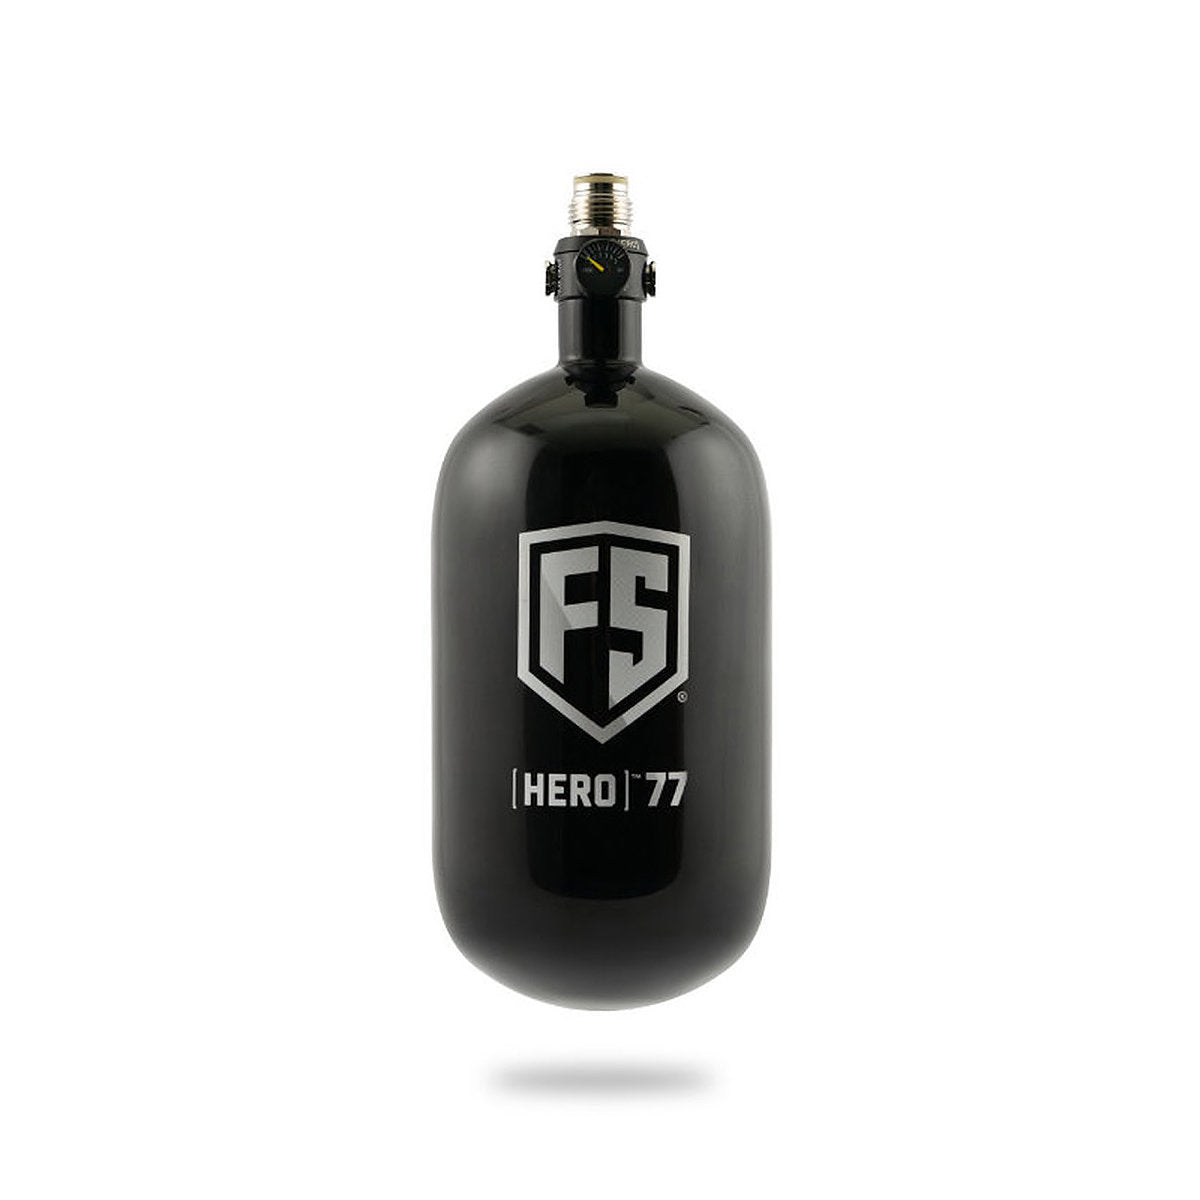 Carbon fiber air tank bottle for paintball